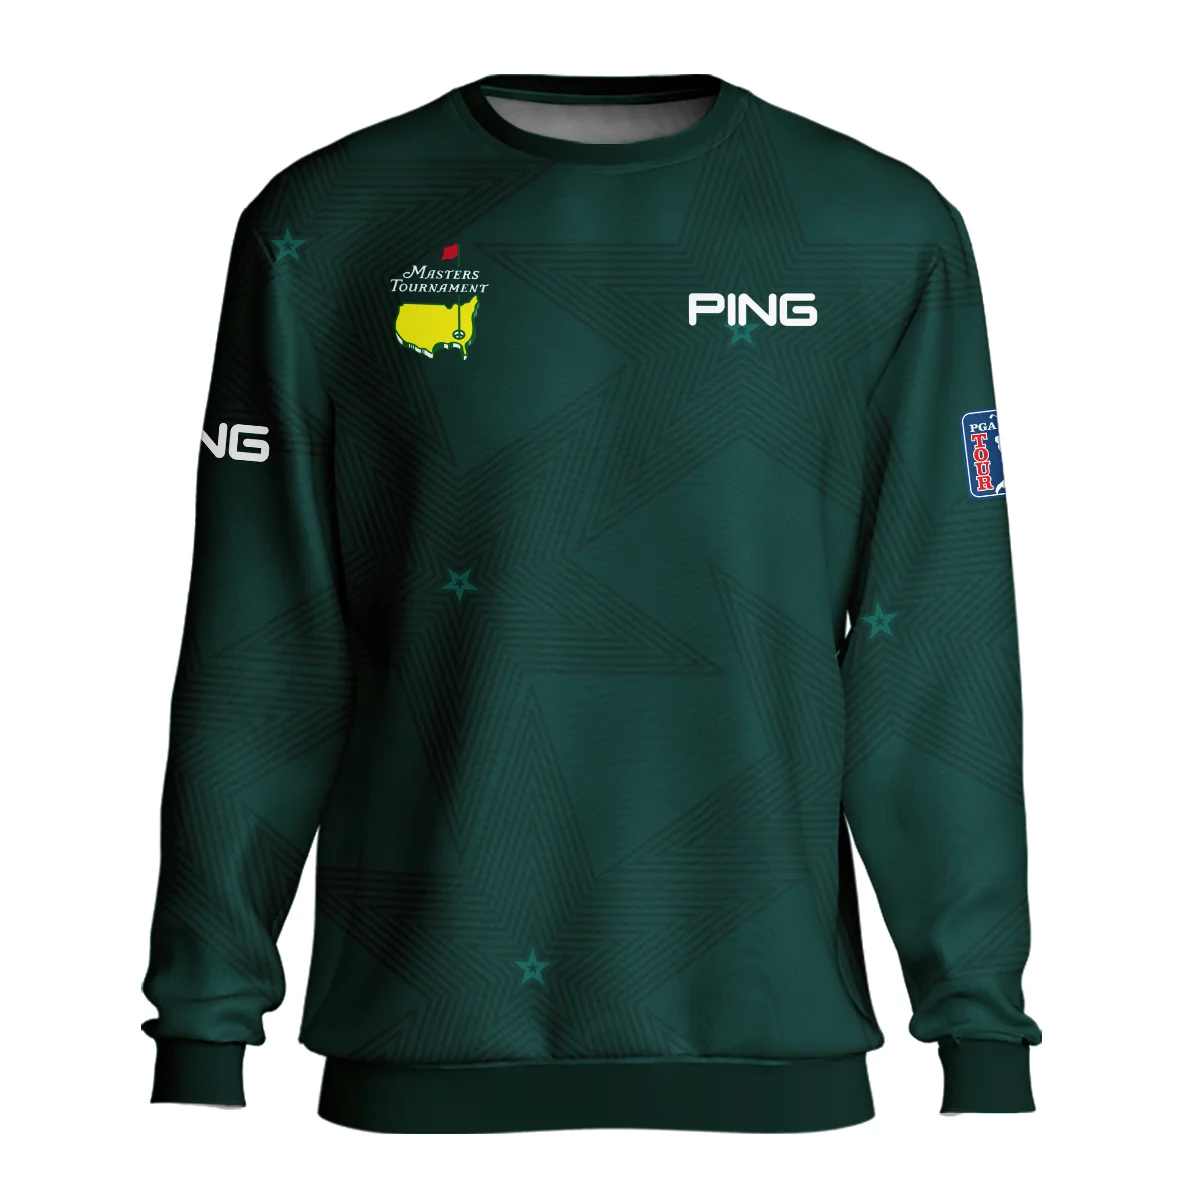 Dark Green Background Masters Tournament Ping Unisex Sweatshirt Style Classic Sweatshirt